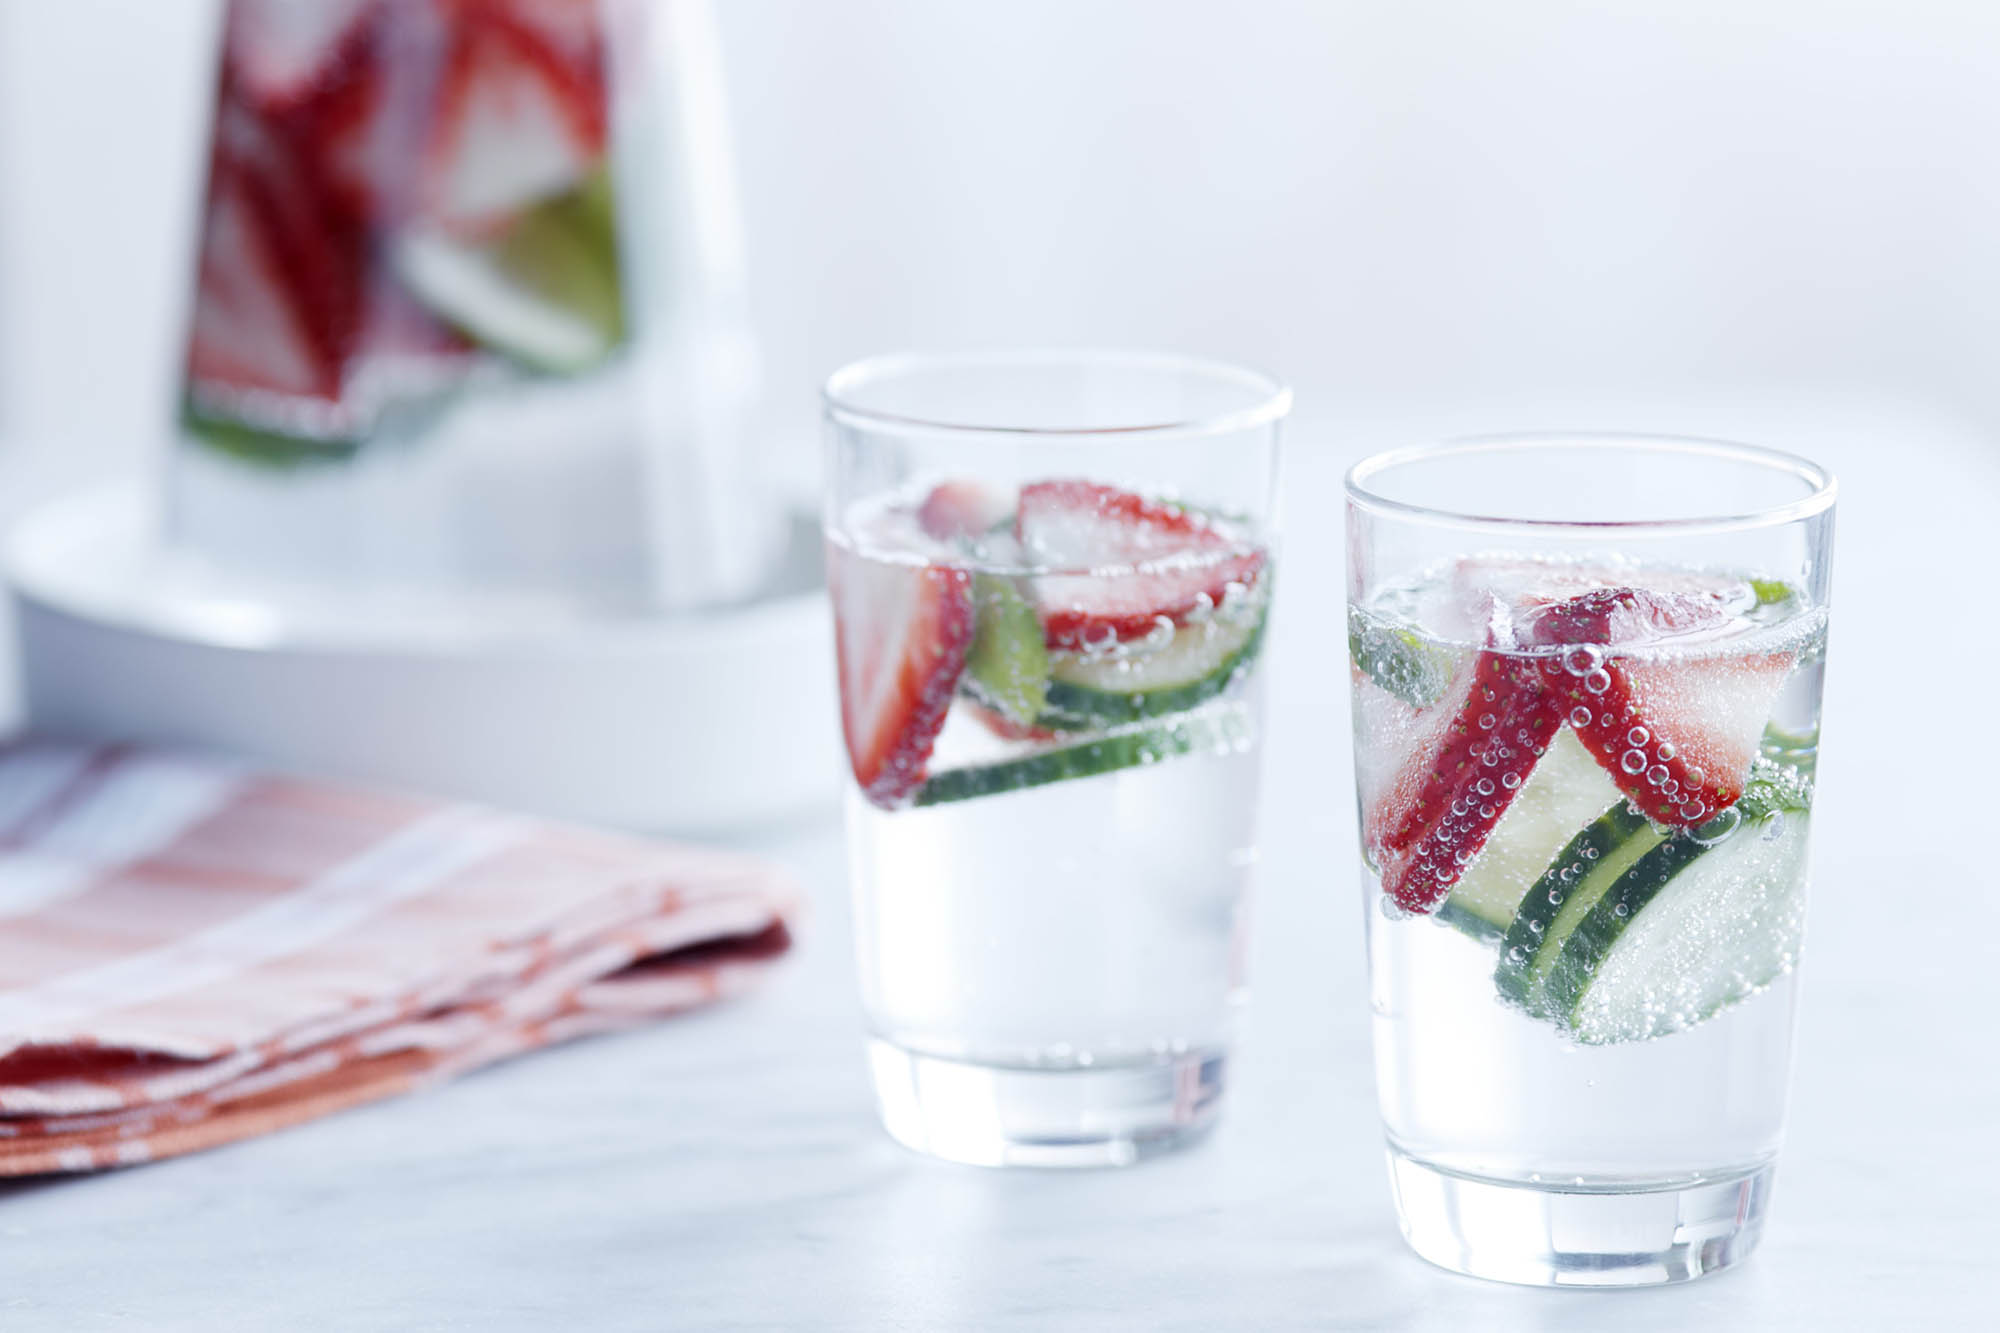 Resultado de imagen para strawberry and cucumber water